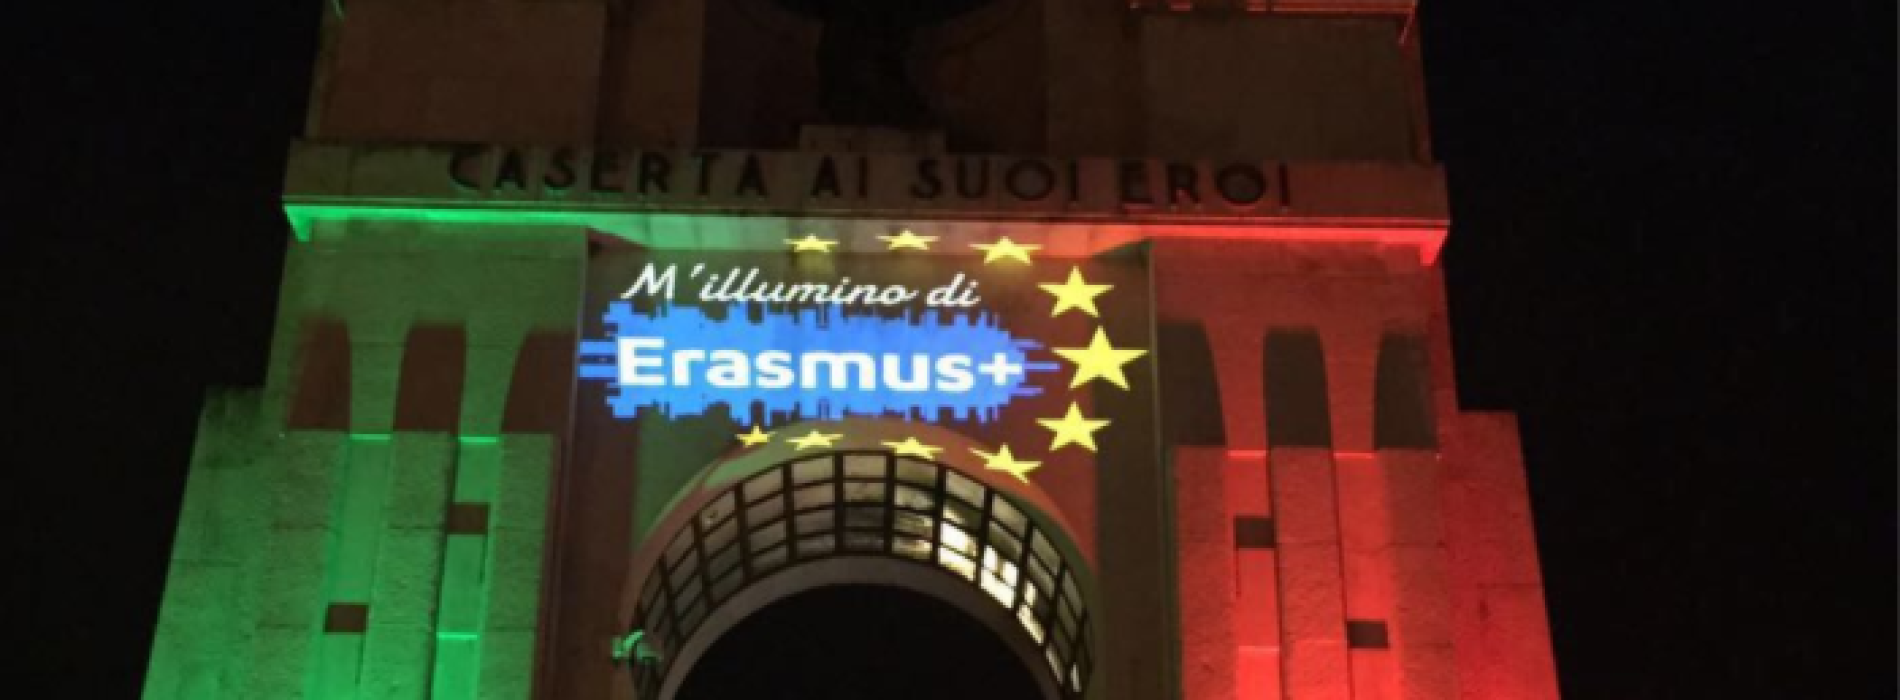 Caserta, sul Monumento brilla il logo dell’Erasmus